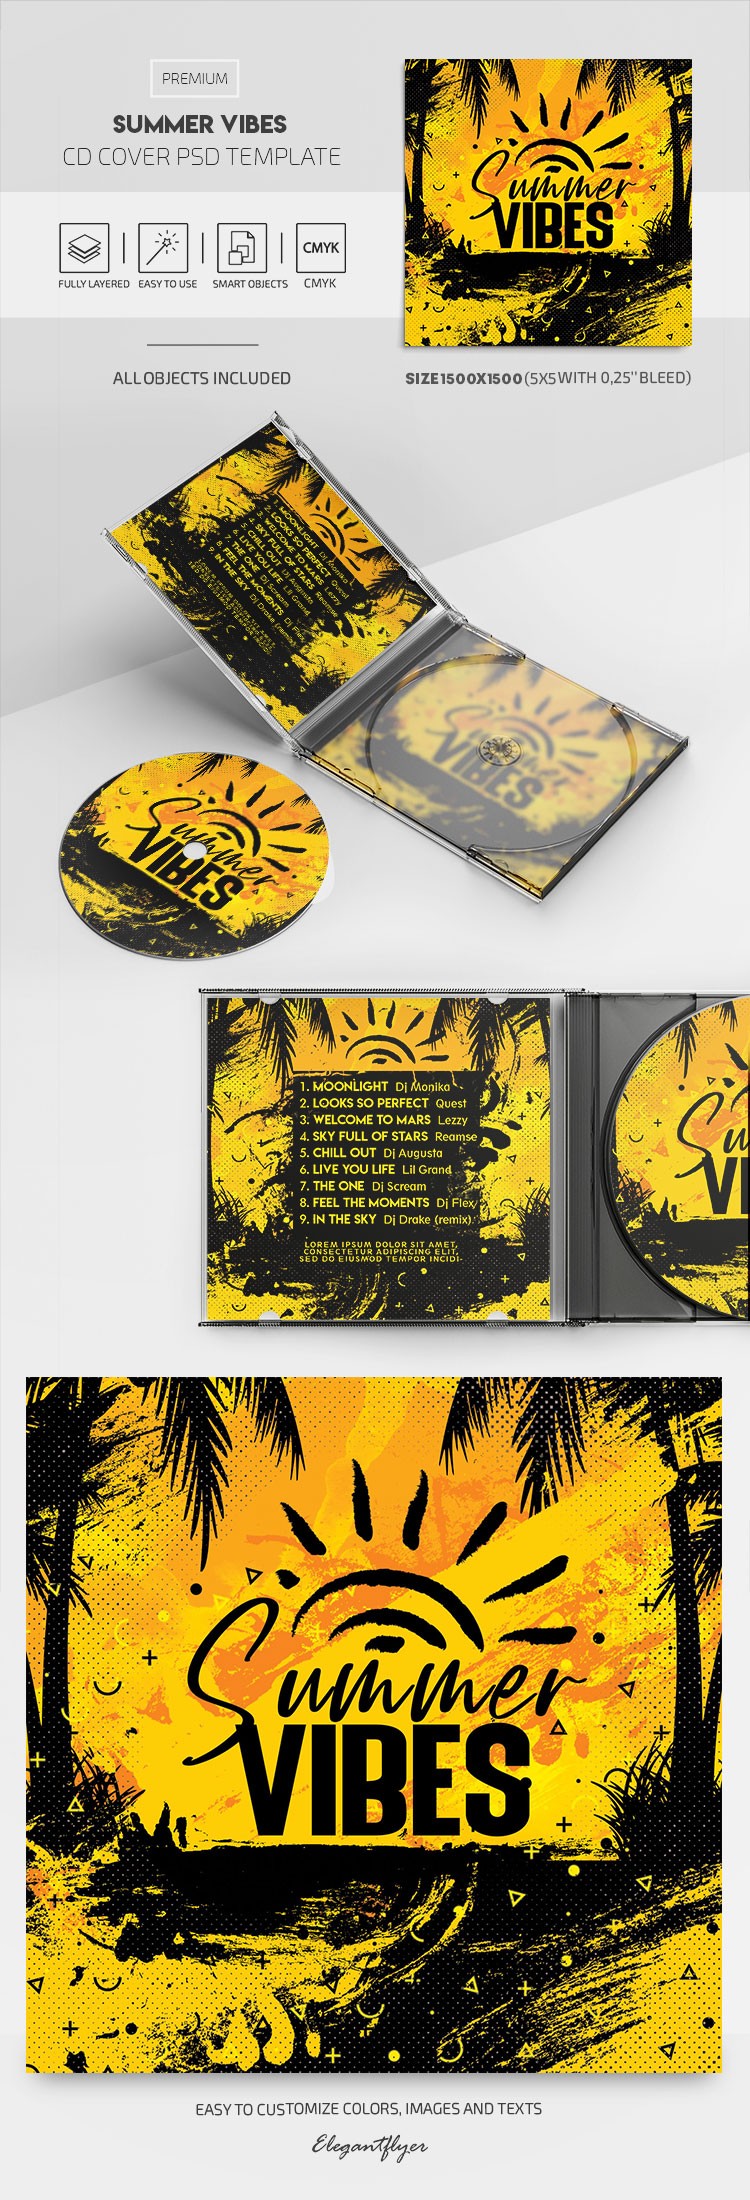 Couverture du CD "Summer Vibes" by ElegantFlyer